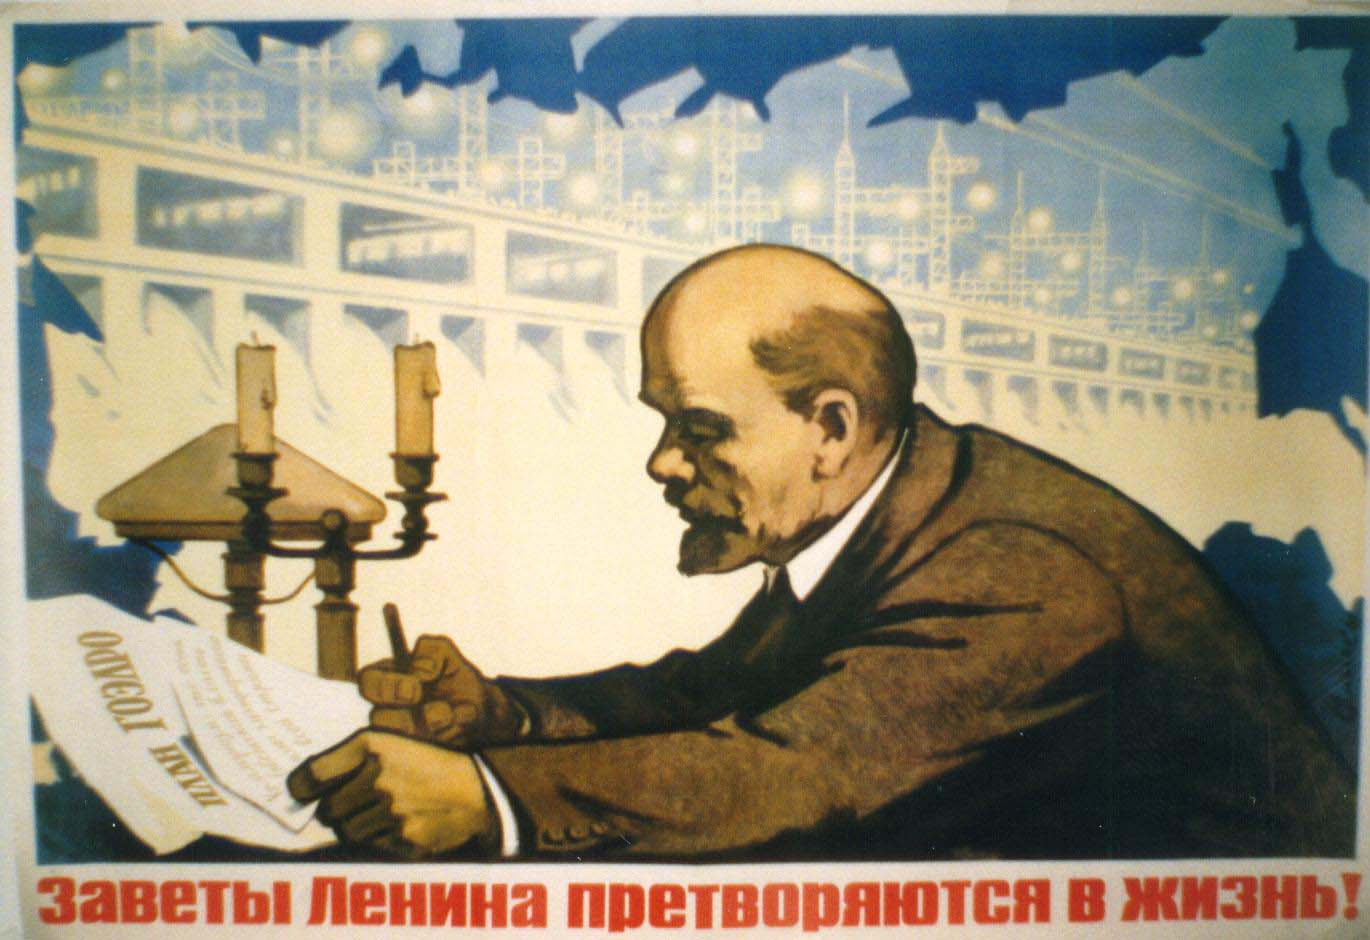 Lenin's plans are fulfilled!